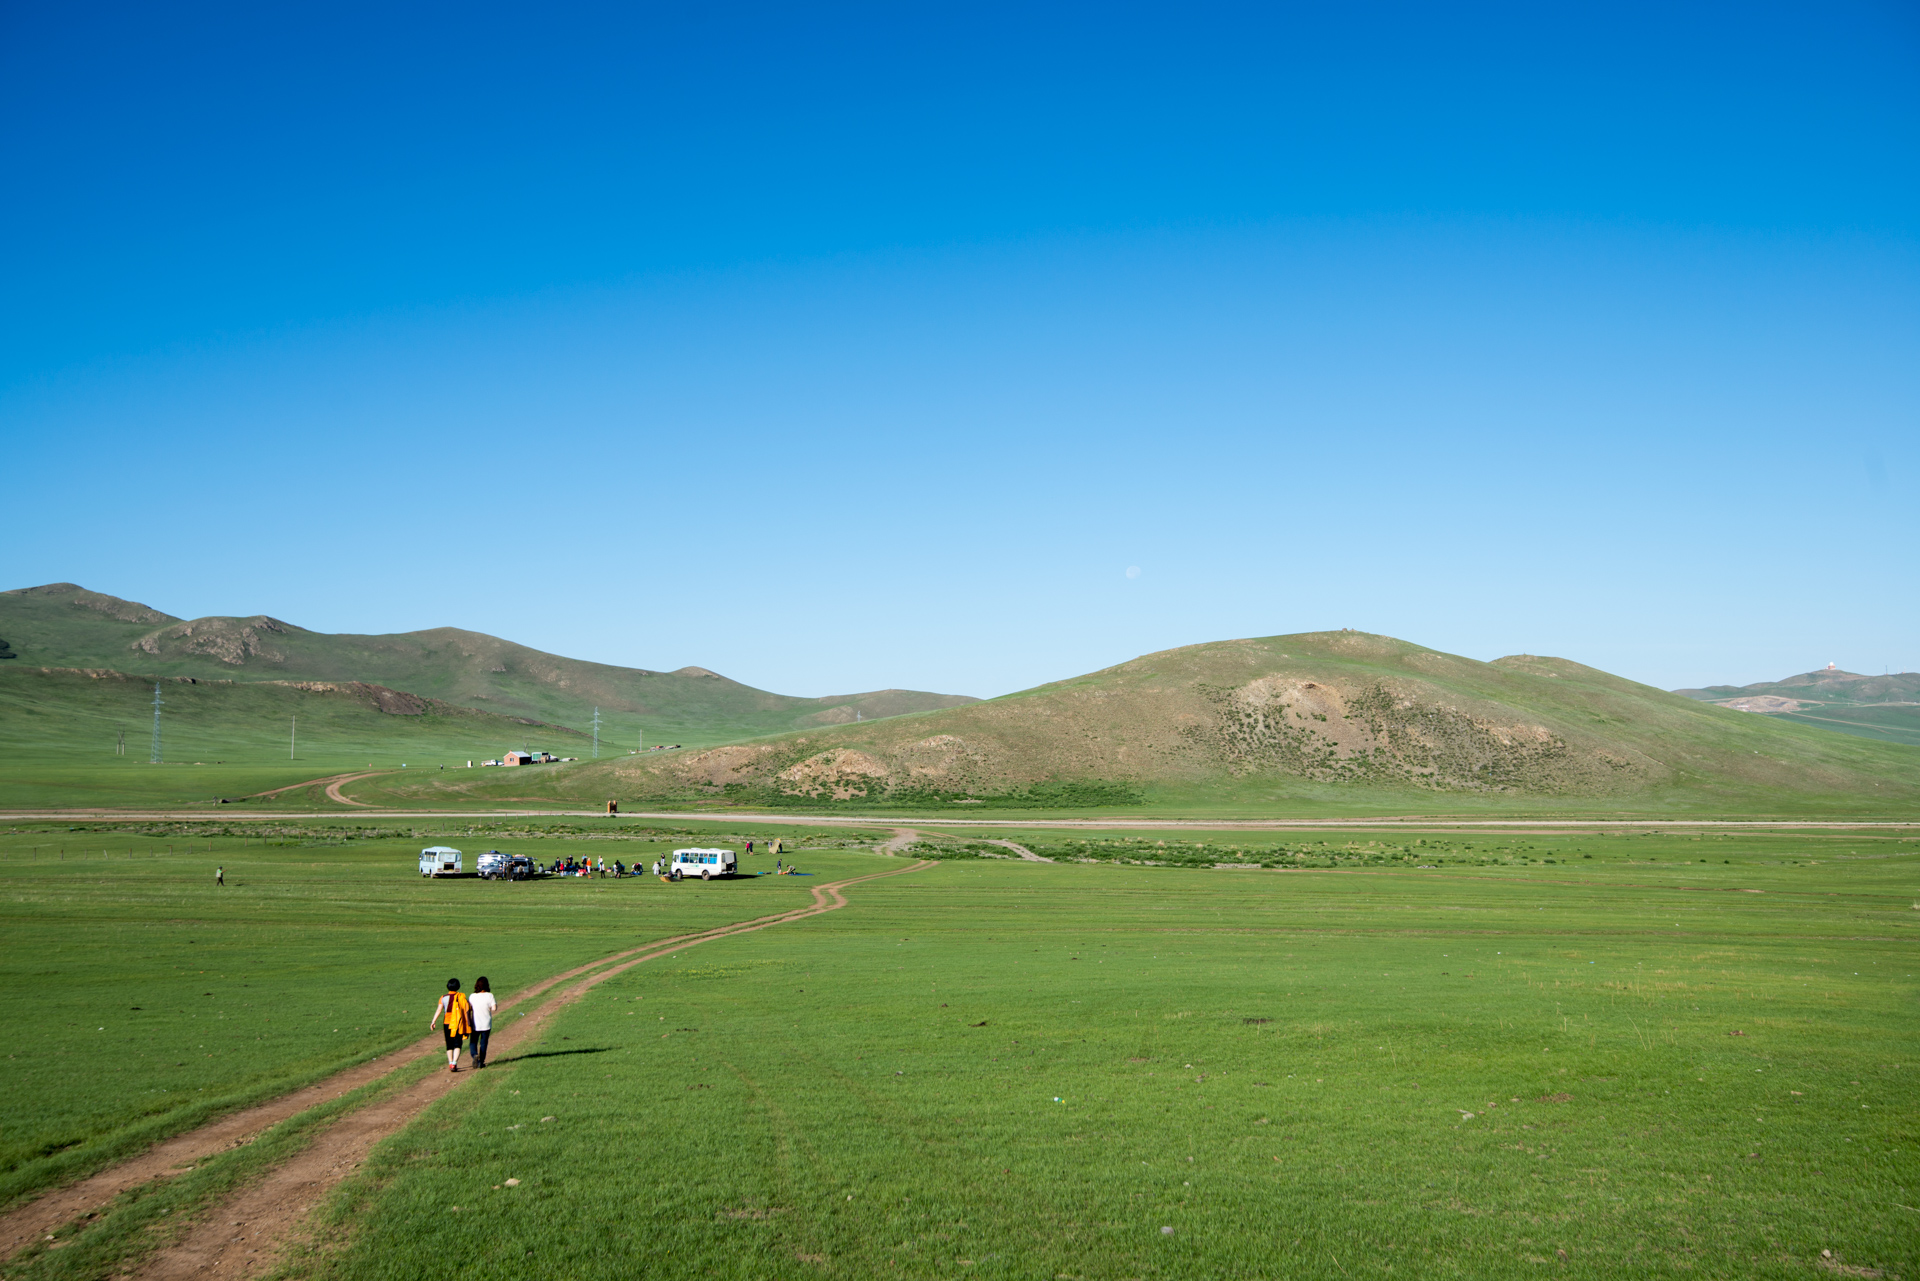 150803_514.jpg : 몽골 학습탐사 2진 사진 8월3일자